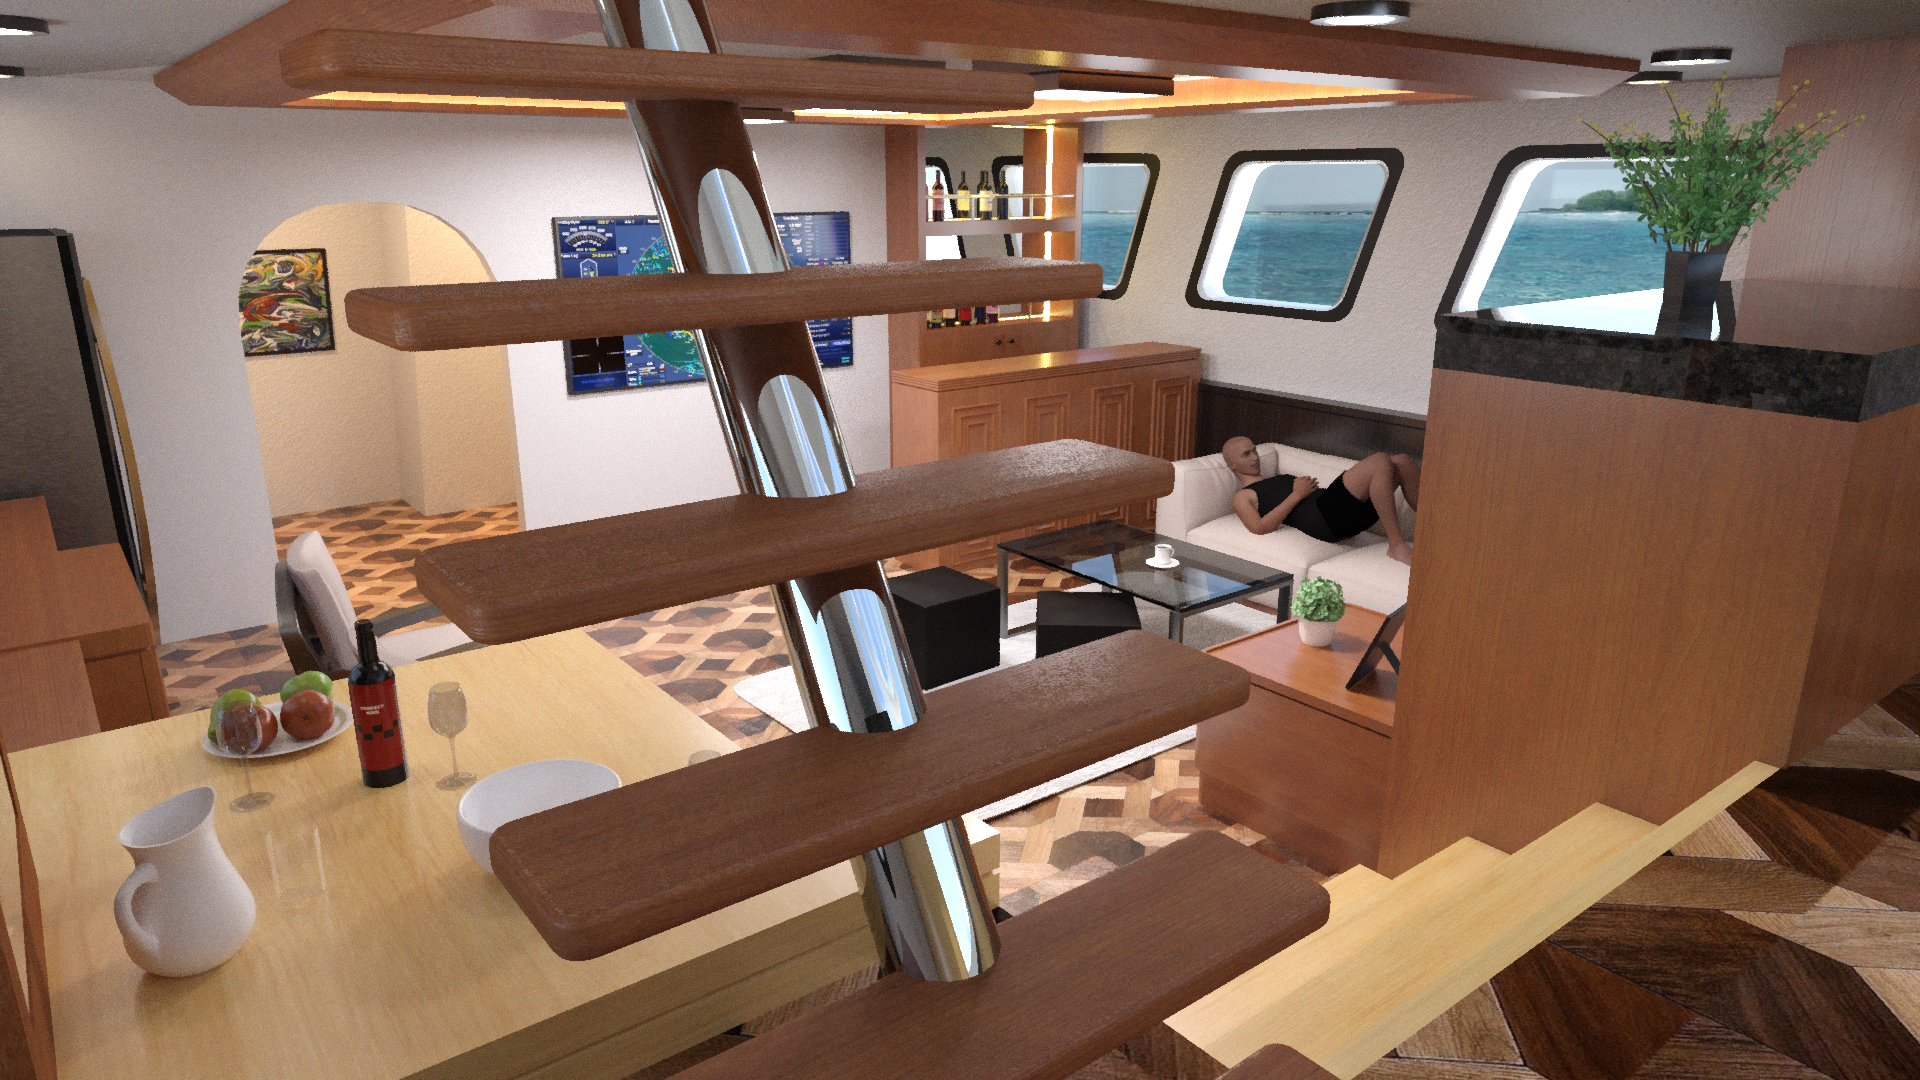 Yacht Salon by: Tesla3dCorp, 3D Models by Daz 3D